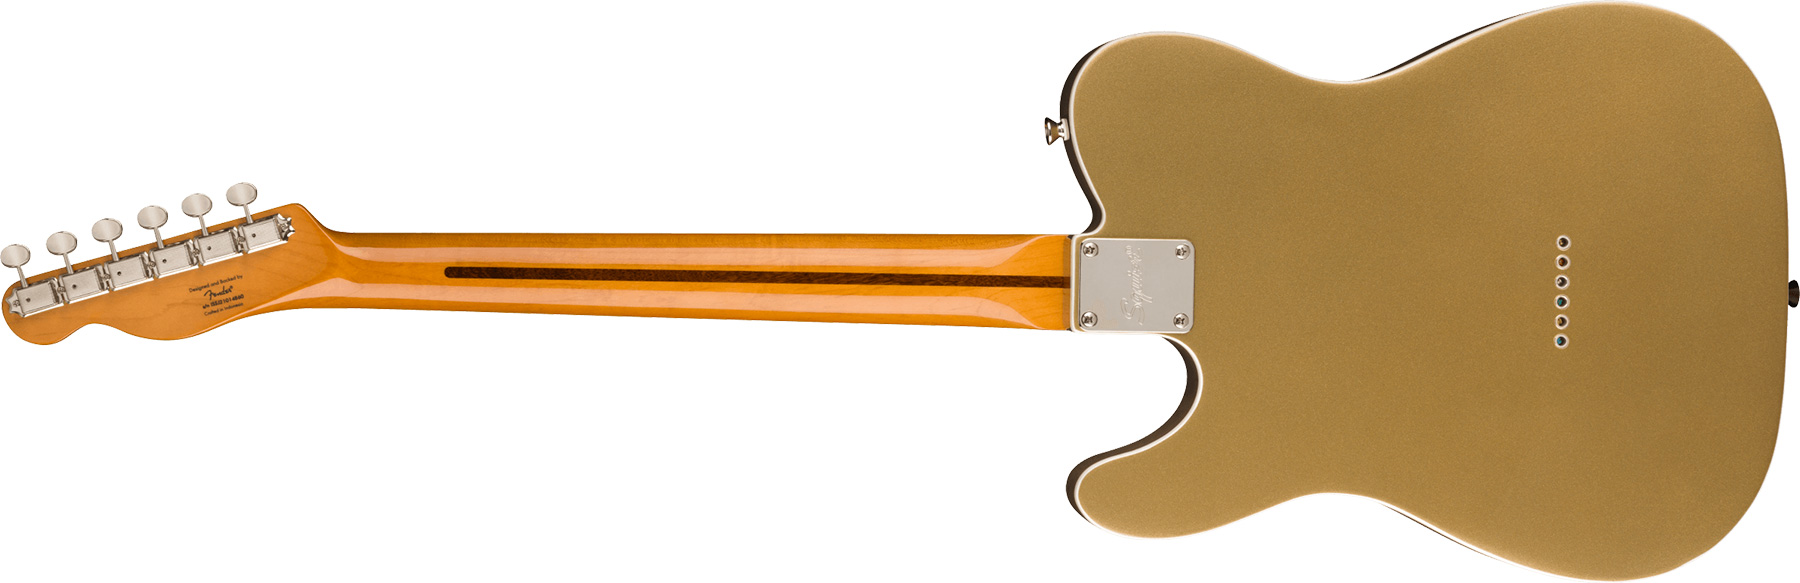 Squier Tele '60s Thinline Parchment Pickguard Classic Vibe Fsr 2s Ht Mn - Aztec Gold - E-Gitarre in Teleform - Variation 1